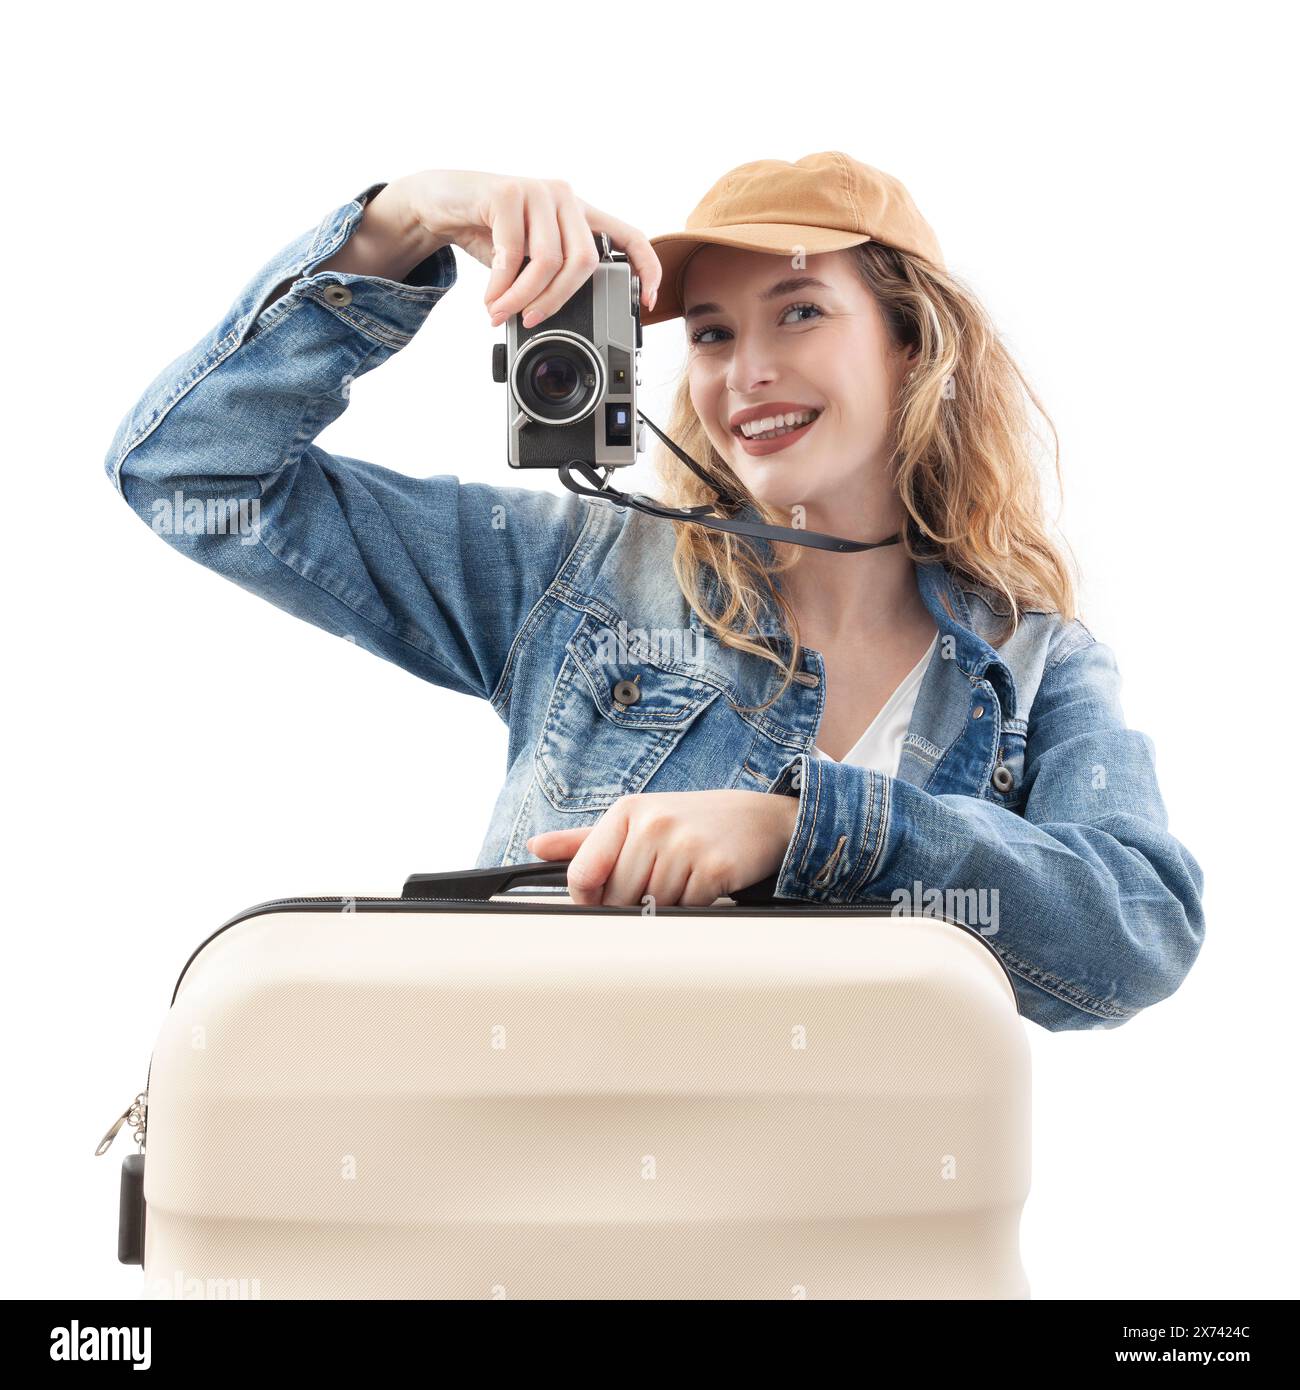 Heureuse jeune femme voyageuse touristique avec un appareil photo prenant une photo, tenant une valise de chariot, isolé sur un fond blanc. Concept de vacances d'été Banque D'Images